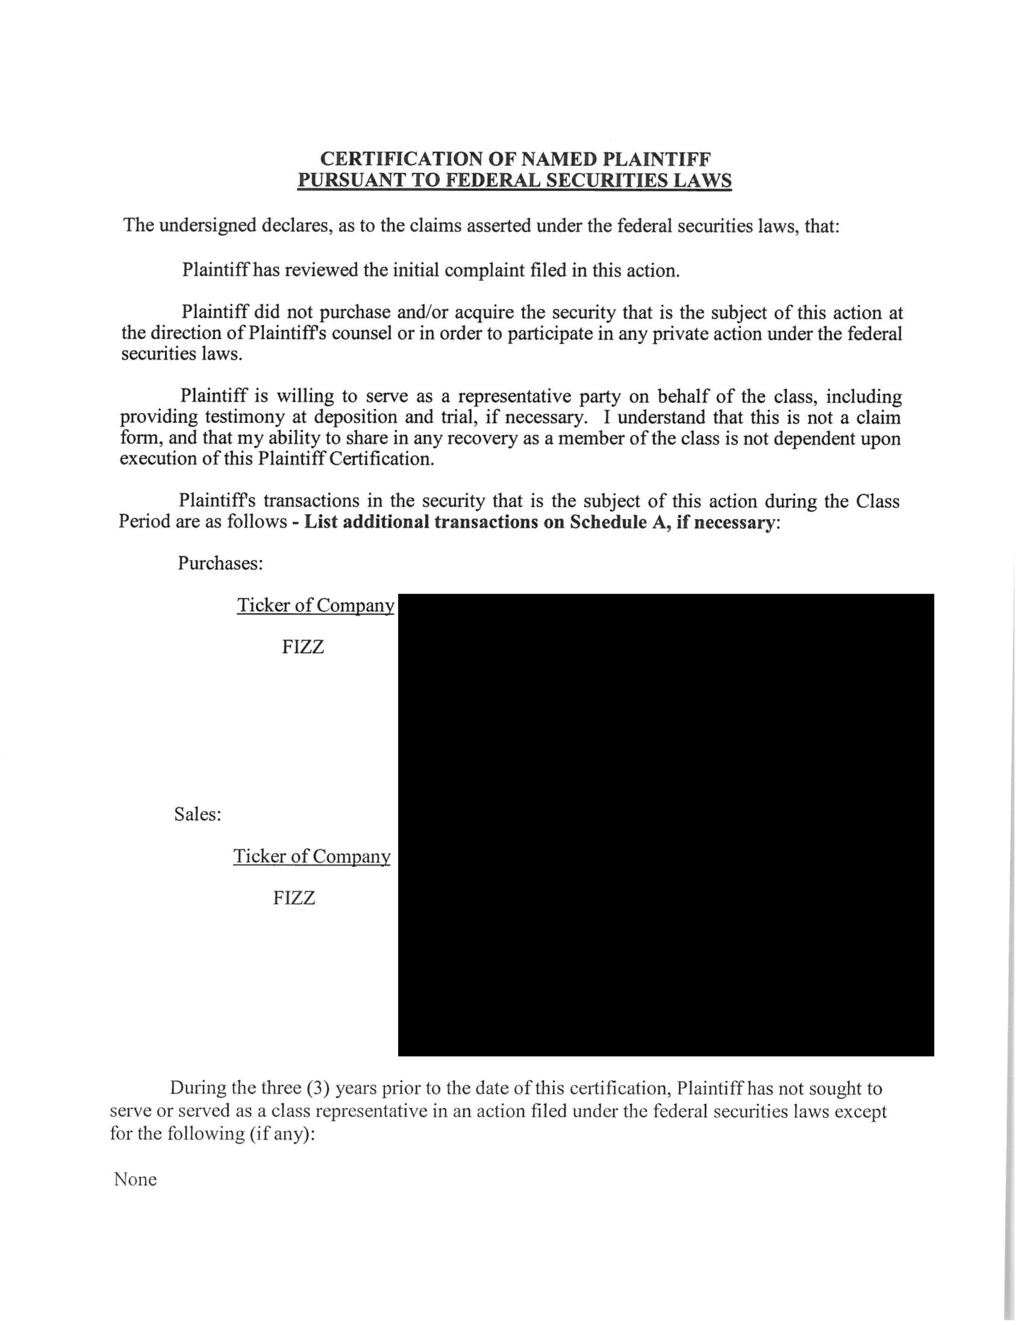 Case 0:18-cv-61631-KMM Document 1 Entered on